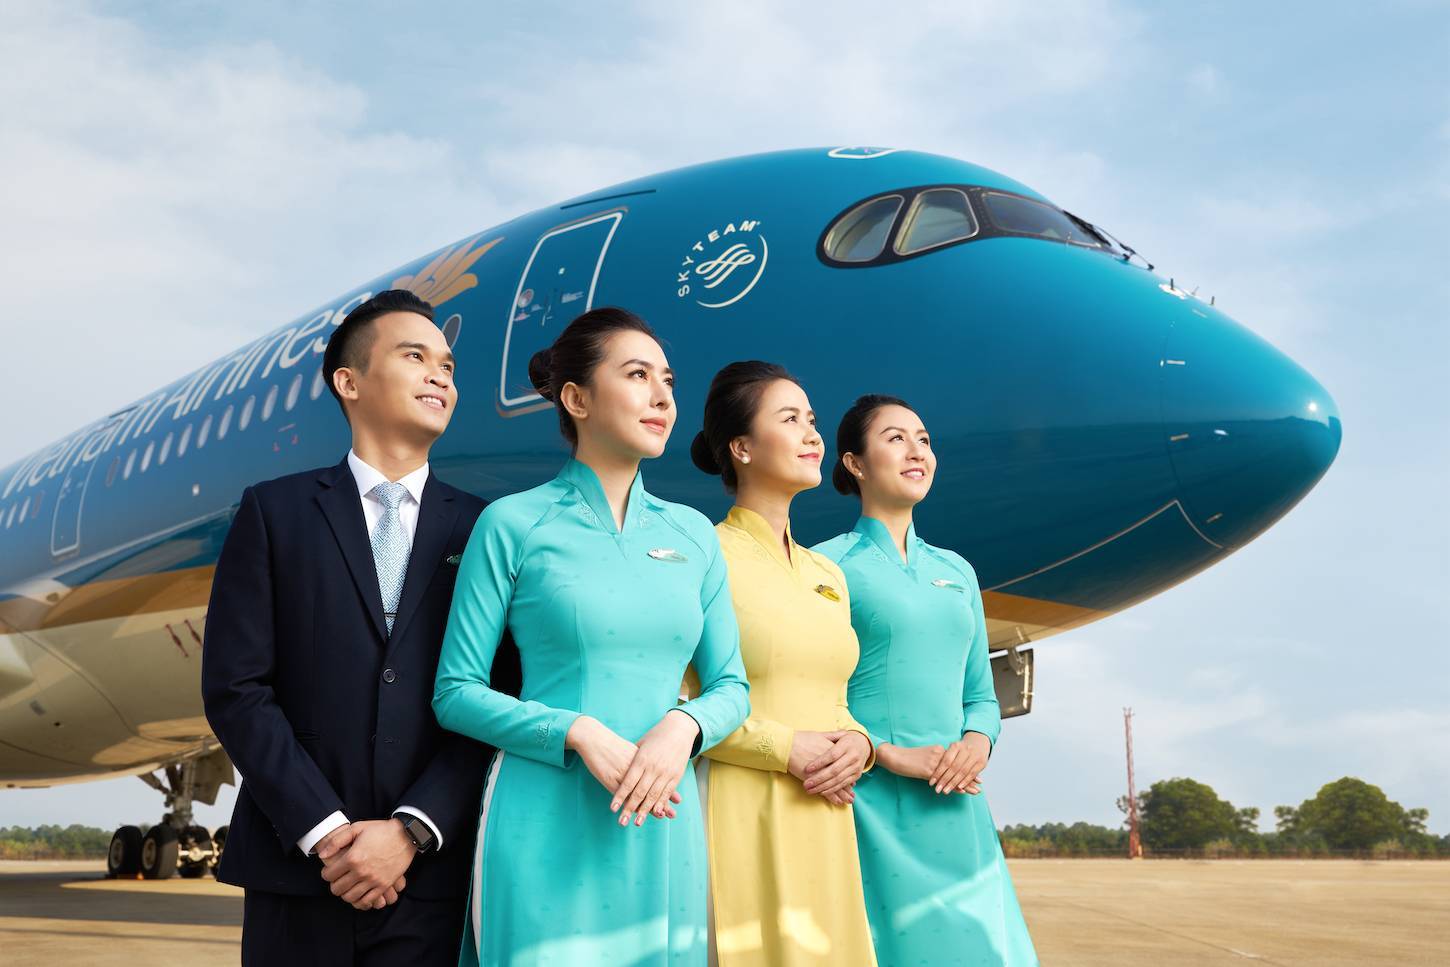 Вьетнамские авиалинии vietnam airlines (вьетнам эйрлайнс): описание авиакомпании, услуги, регистрация на рейс онлайн, другие авиакомпании вьетнама